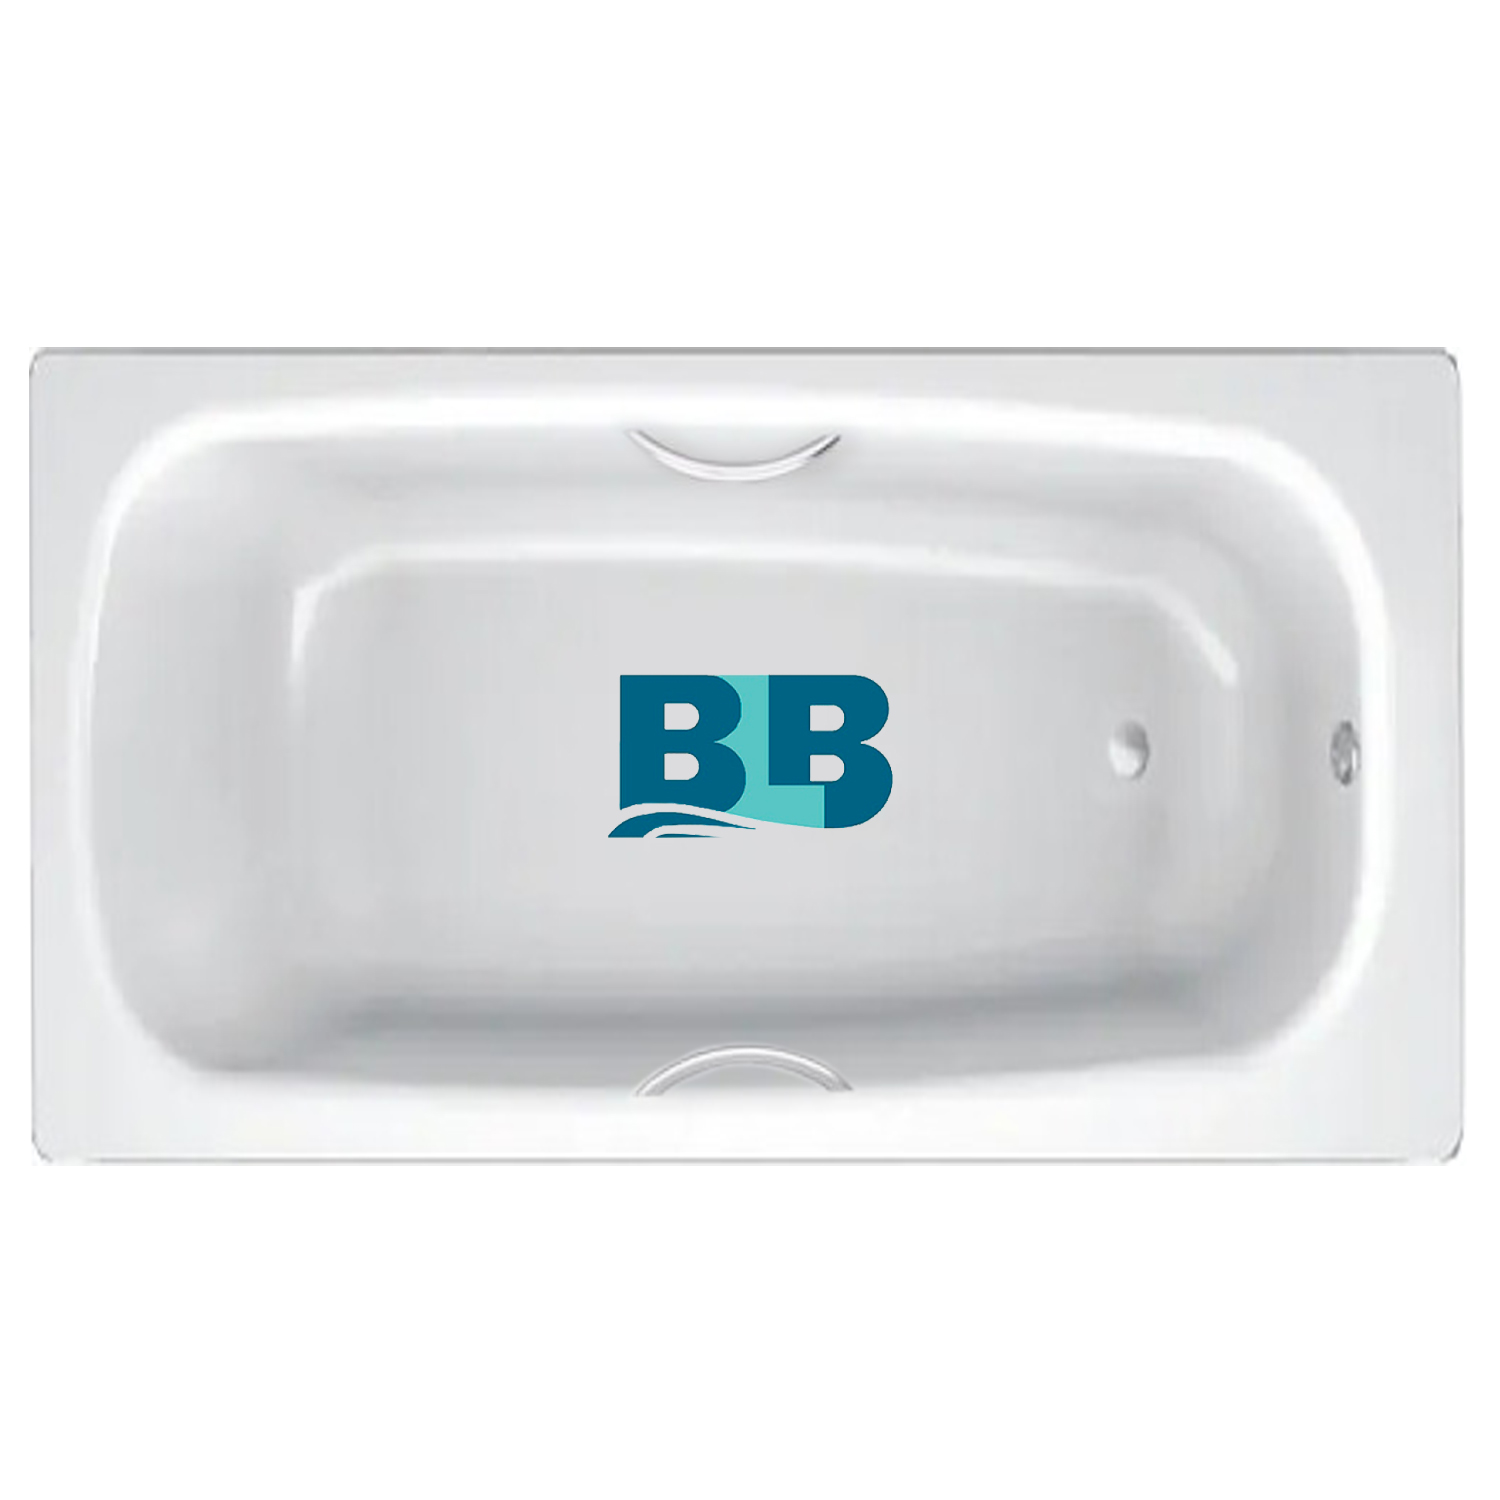 BLB apmstdbl1. Ванна стальная Universal HG BLB, С отверстиями для ручек. Код: 211310 стальная ванна BLB Universal b70h 170x70 см, с ножками apmstdbl1. Ванна стальная с ручками 150х75 и выступами. Ванна стальная blb europa